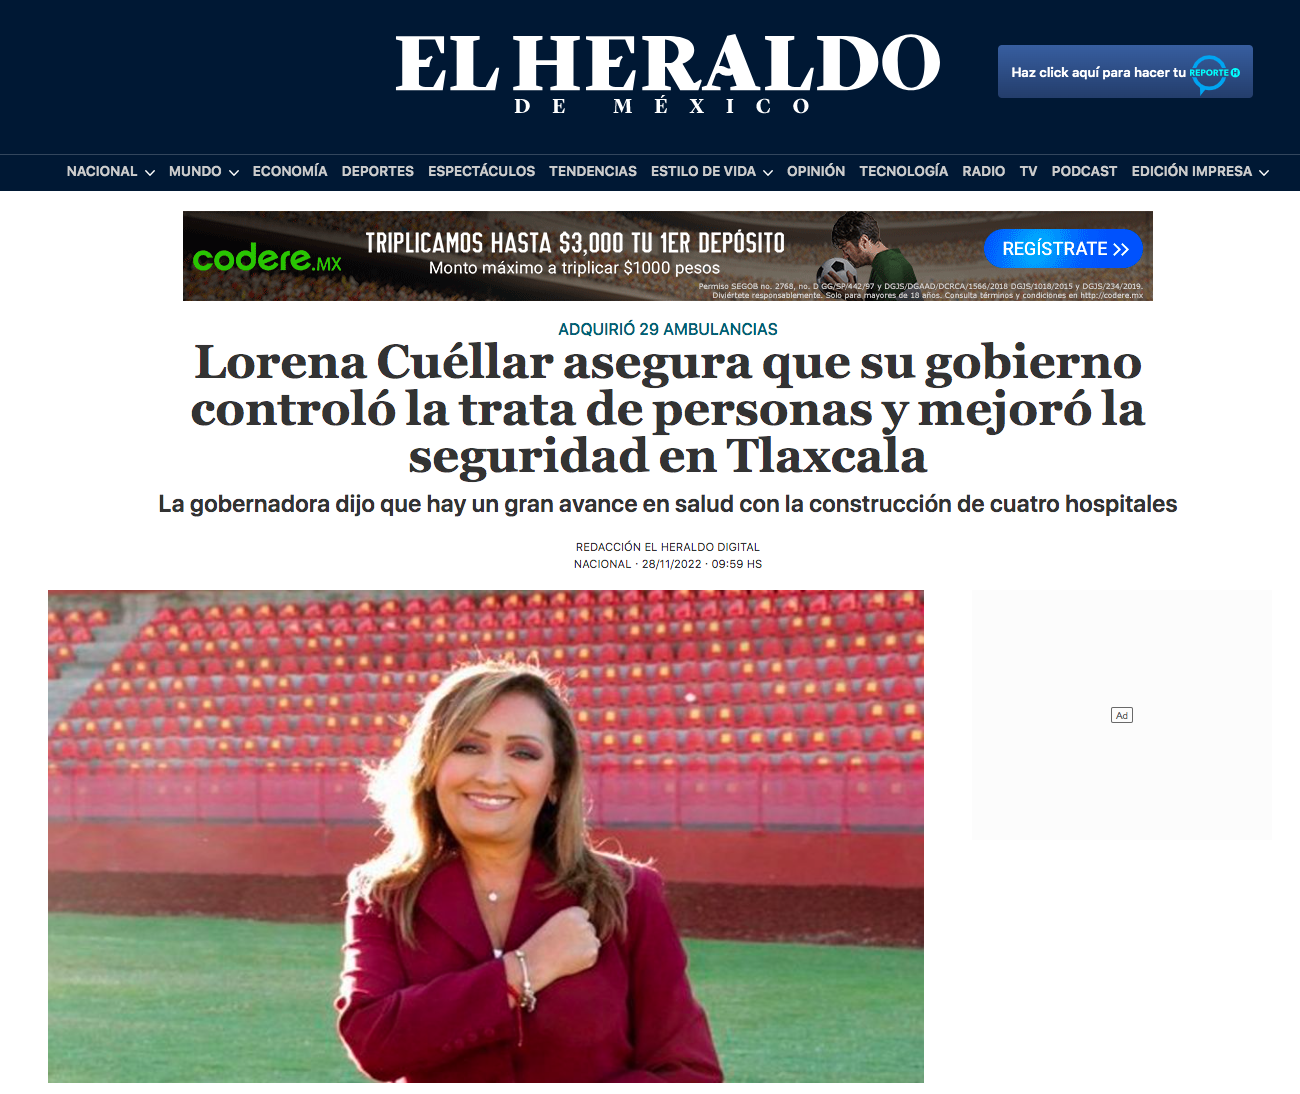 Tlaxcala-Lorena Cuellar-1er informe-enfermedades renales-trata de personas-feminicidios-seguridad-Atoyac-Zahuapan